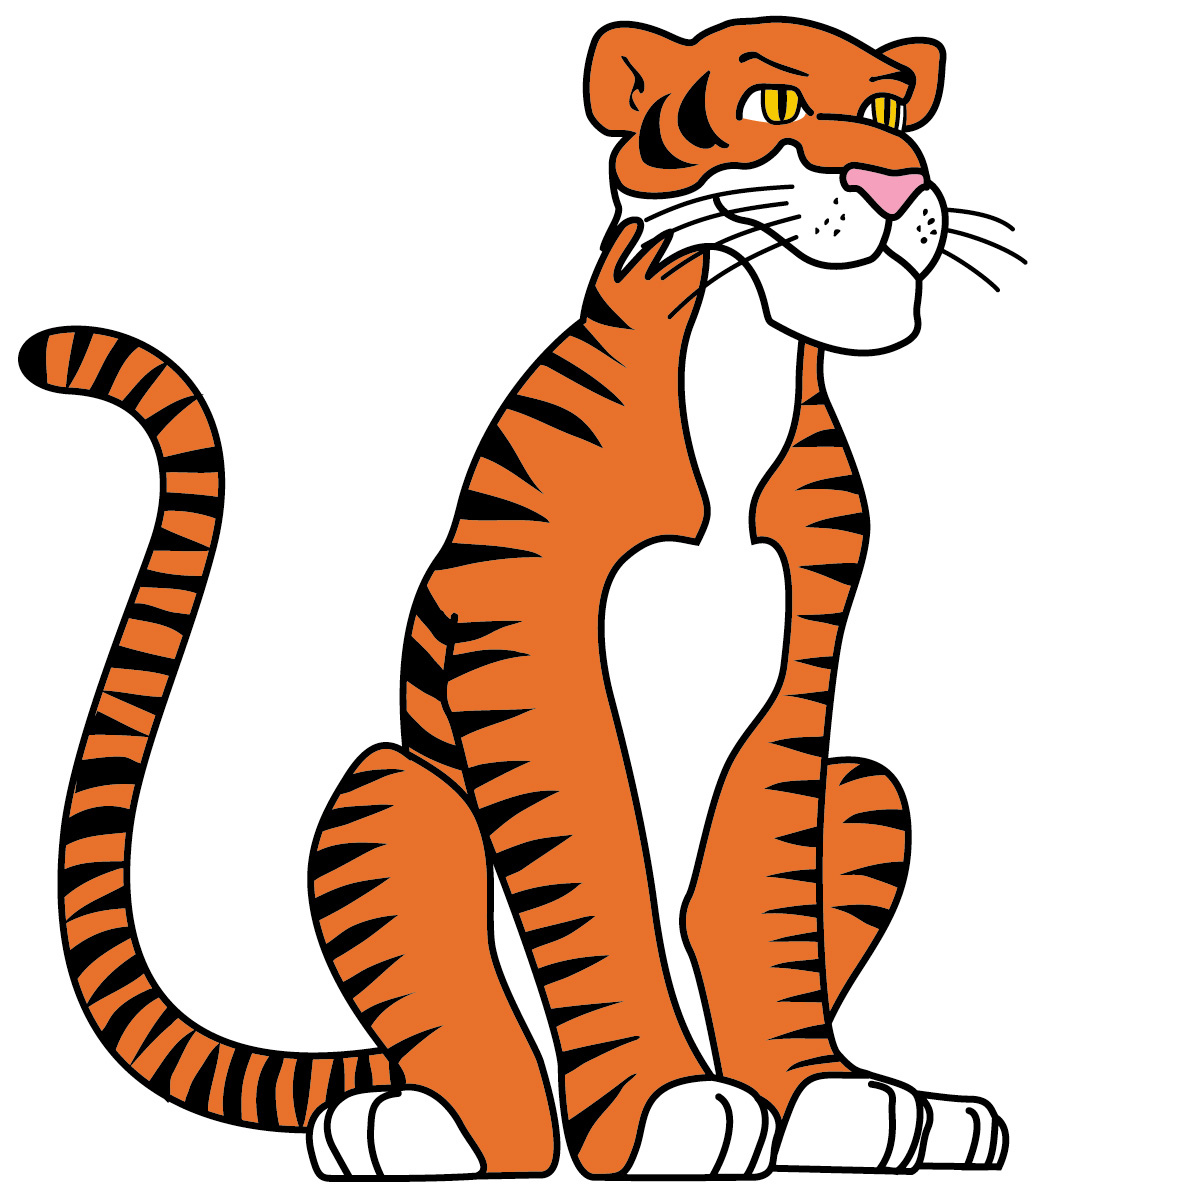 Tiger Clip Art - Vergilis Clipart